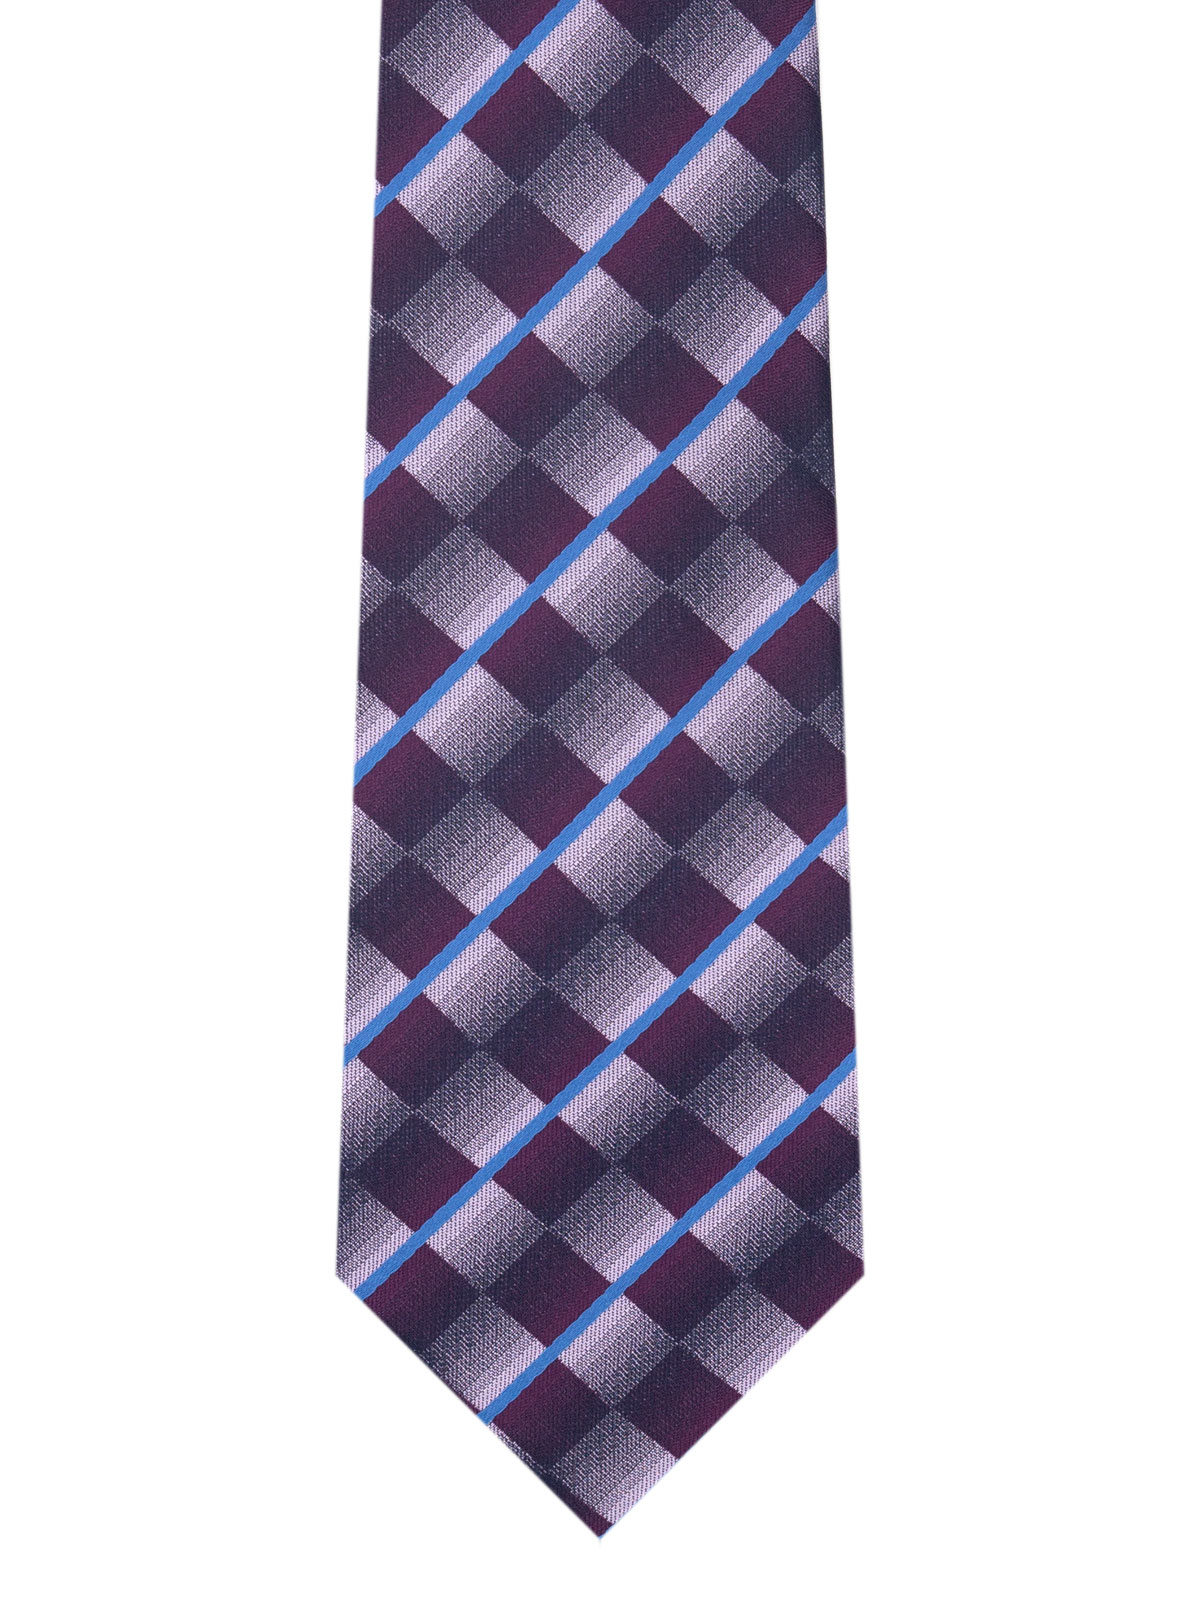 Ефектна вратовръзка на линии и квадрати - 10181 - 25.00 лв img2